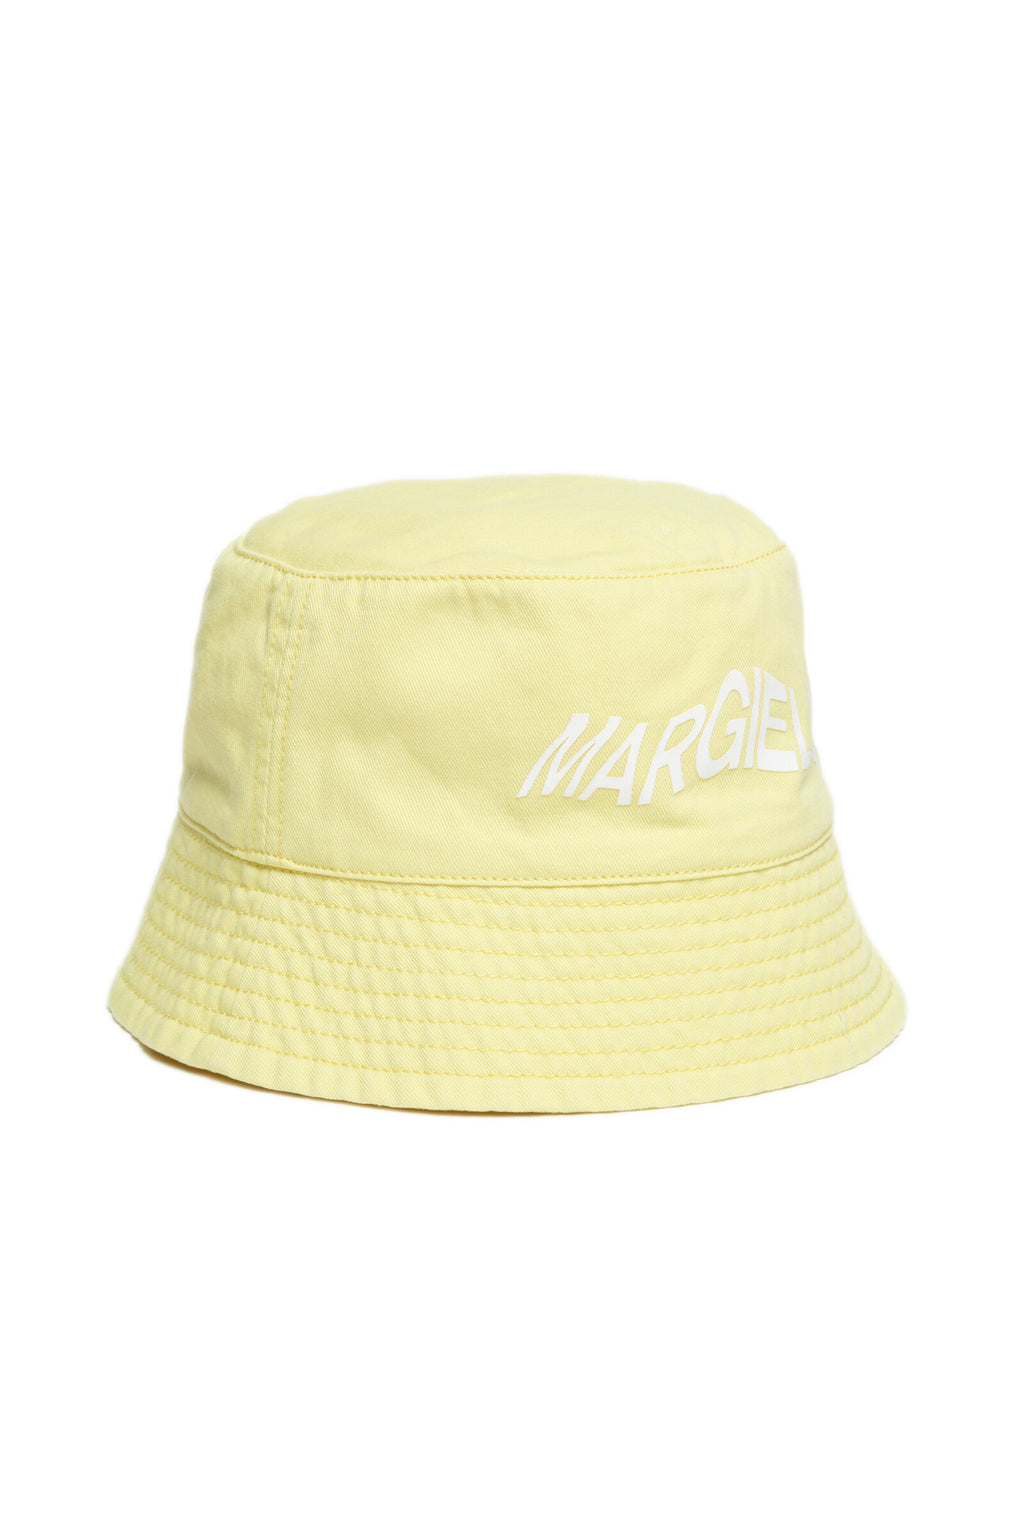 Yellow gabardine fisherman's cap with logo